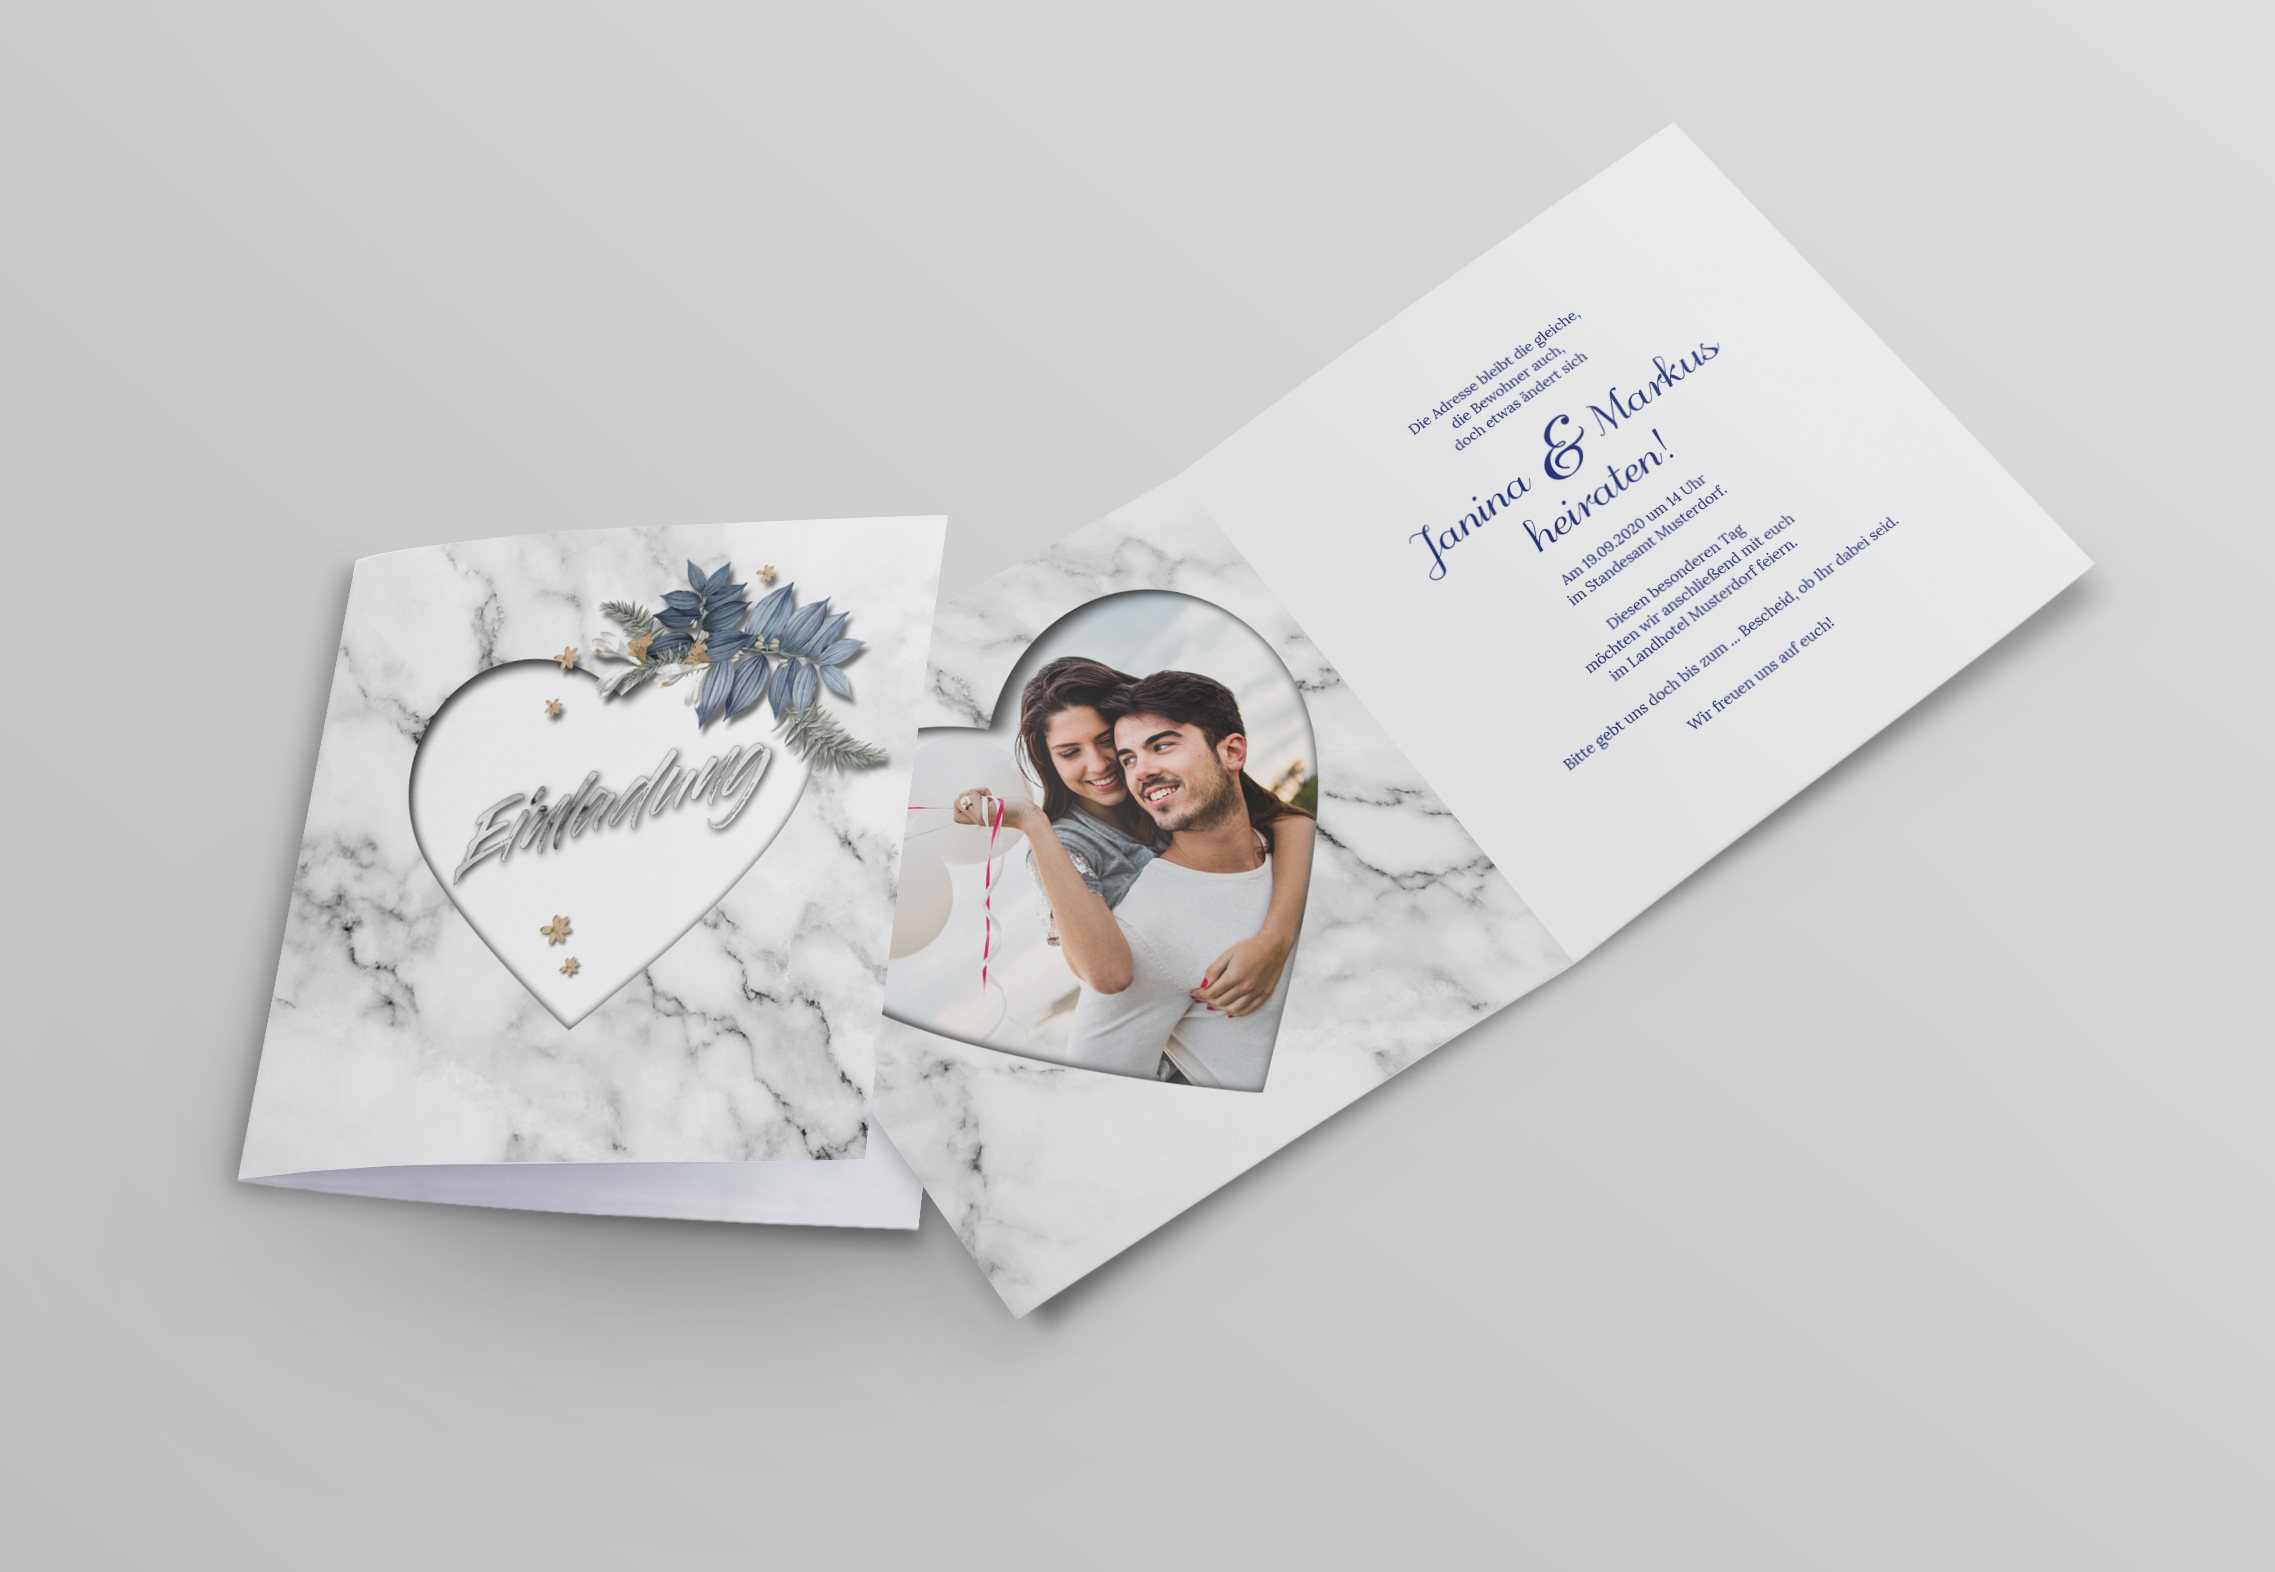 Edle Marmor Hochzeitskarte Einladungskarte Quadratisch In Weiss Marmor Optik Hochzeitseinladungen Hochzeit Wirmachendeinekarte